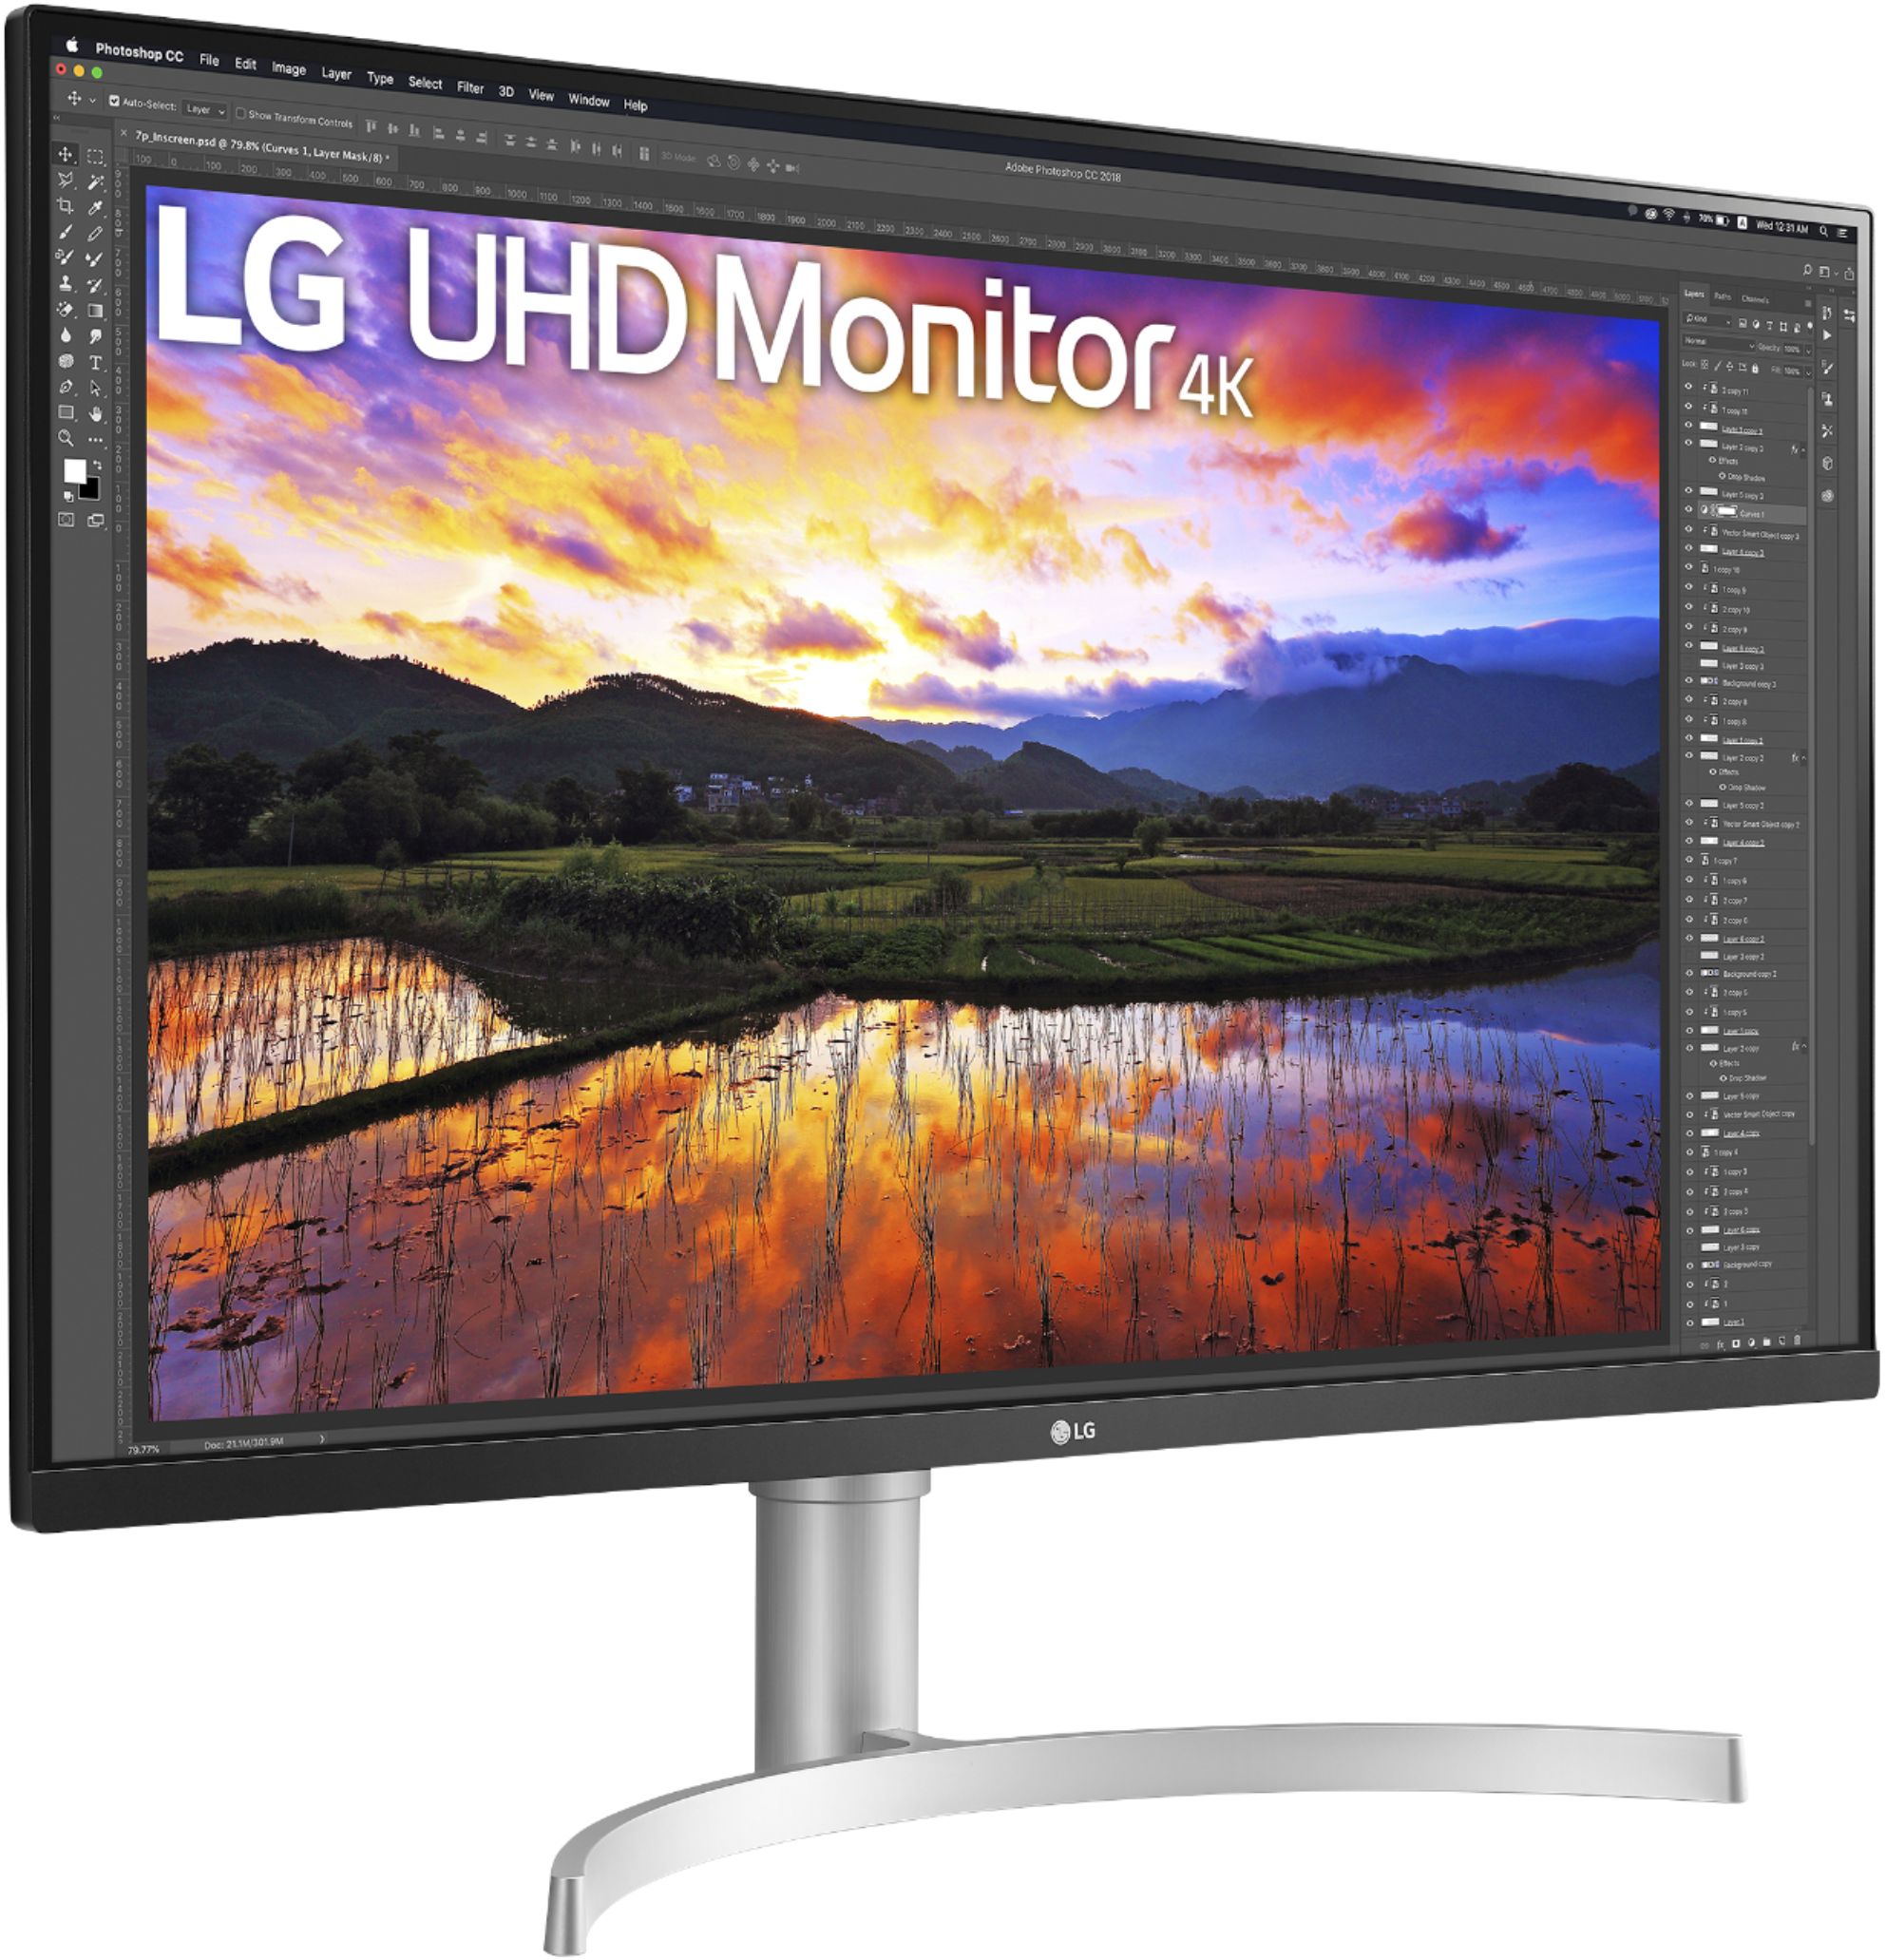 LG 32UN500-W - 32 Pulgadas - 4K UHD - AMD FreeSync